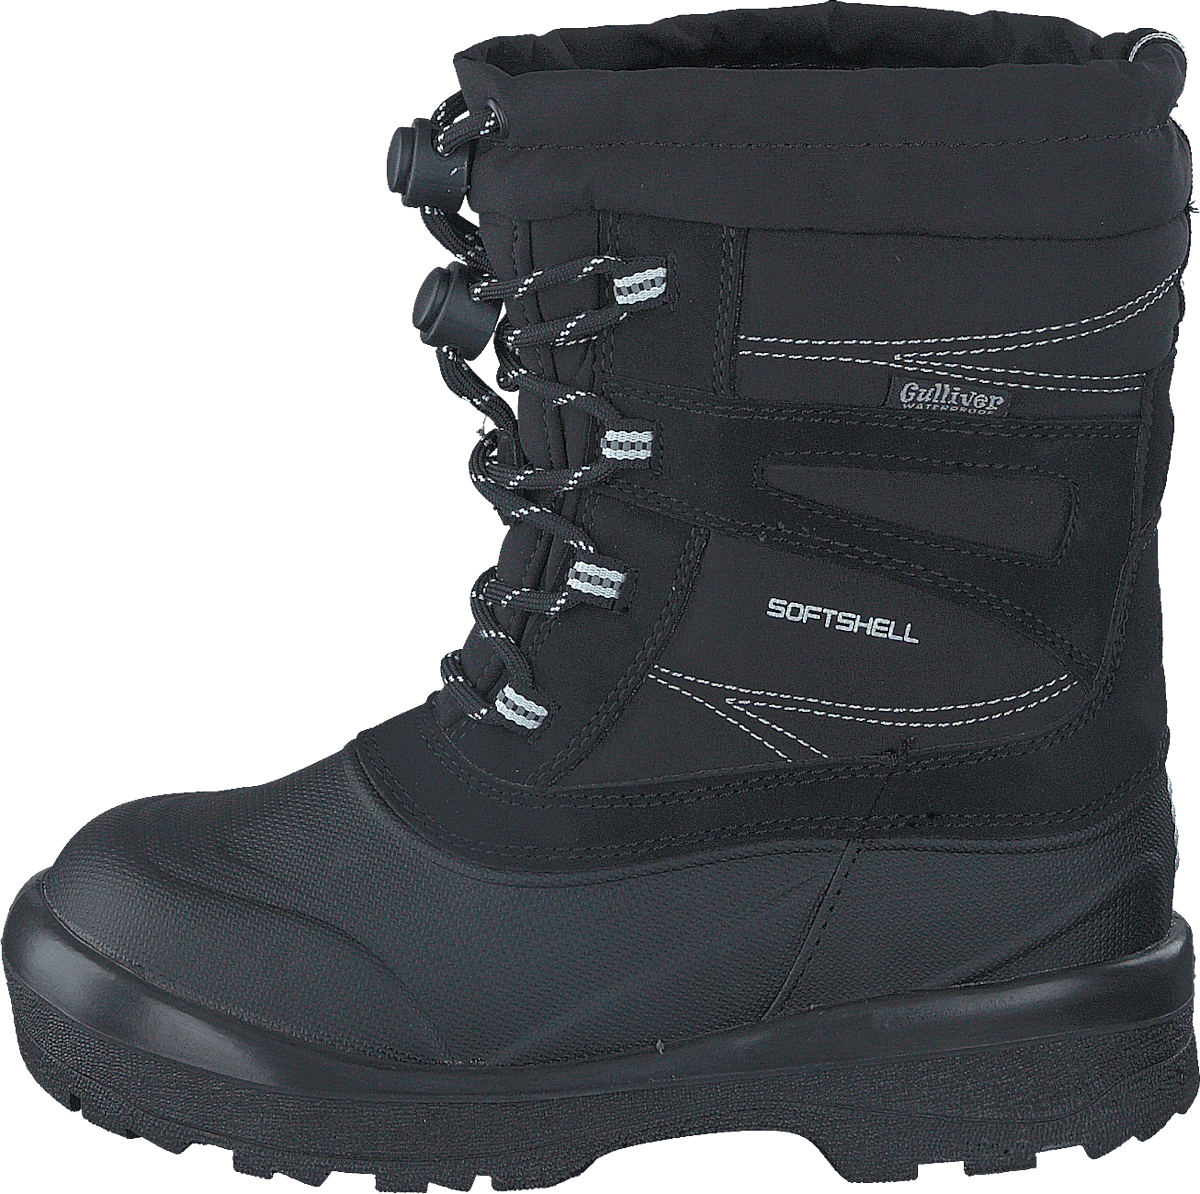 430-2498 Waterproof Warm Lined Black